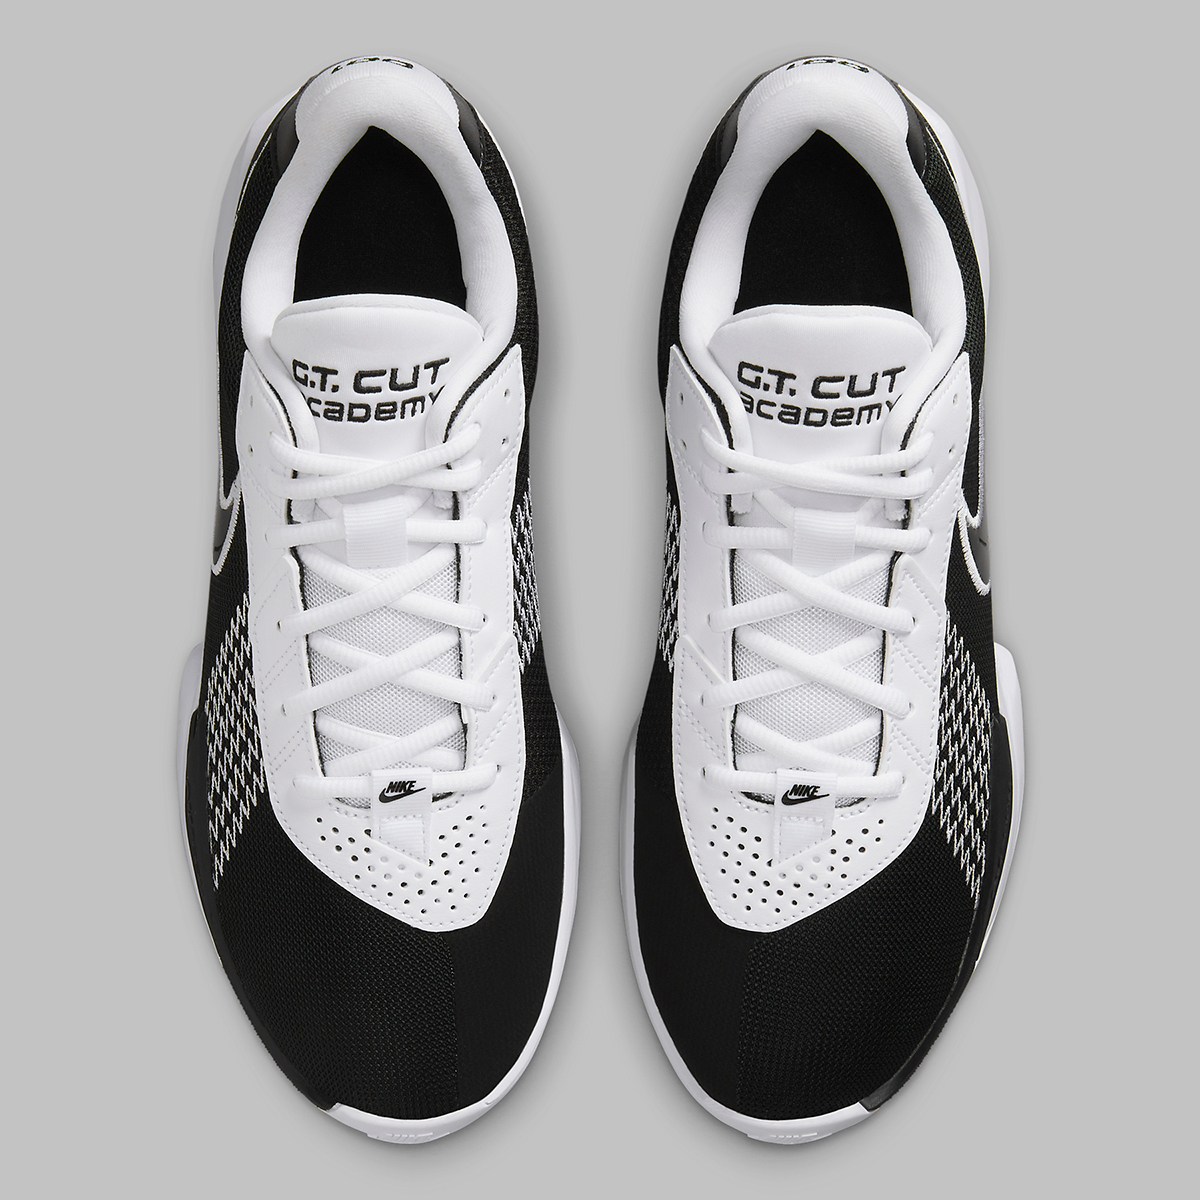 Nike Zoom Gt Cut Academy Black grey Fb2599 003 3 Ba771f